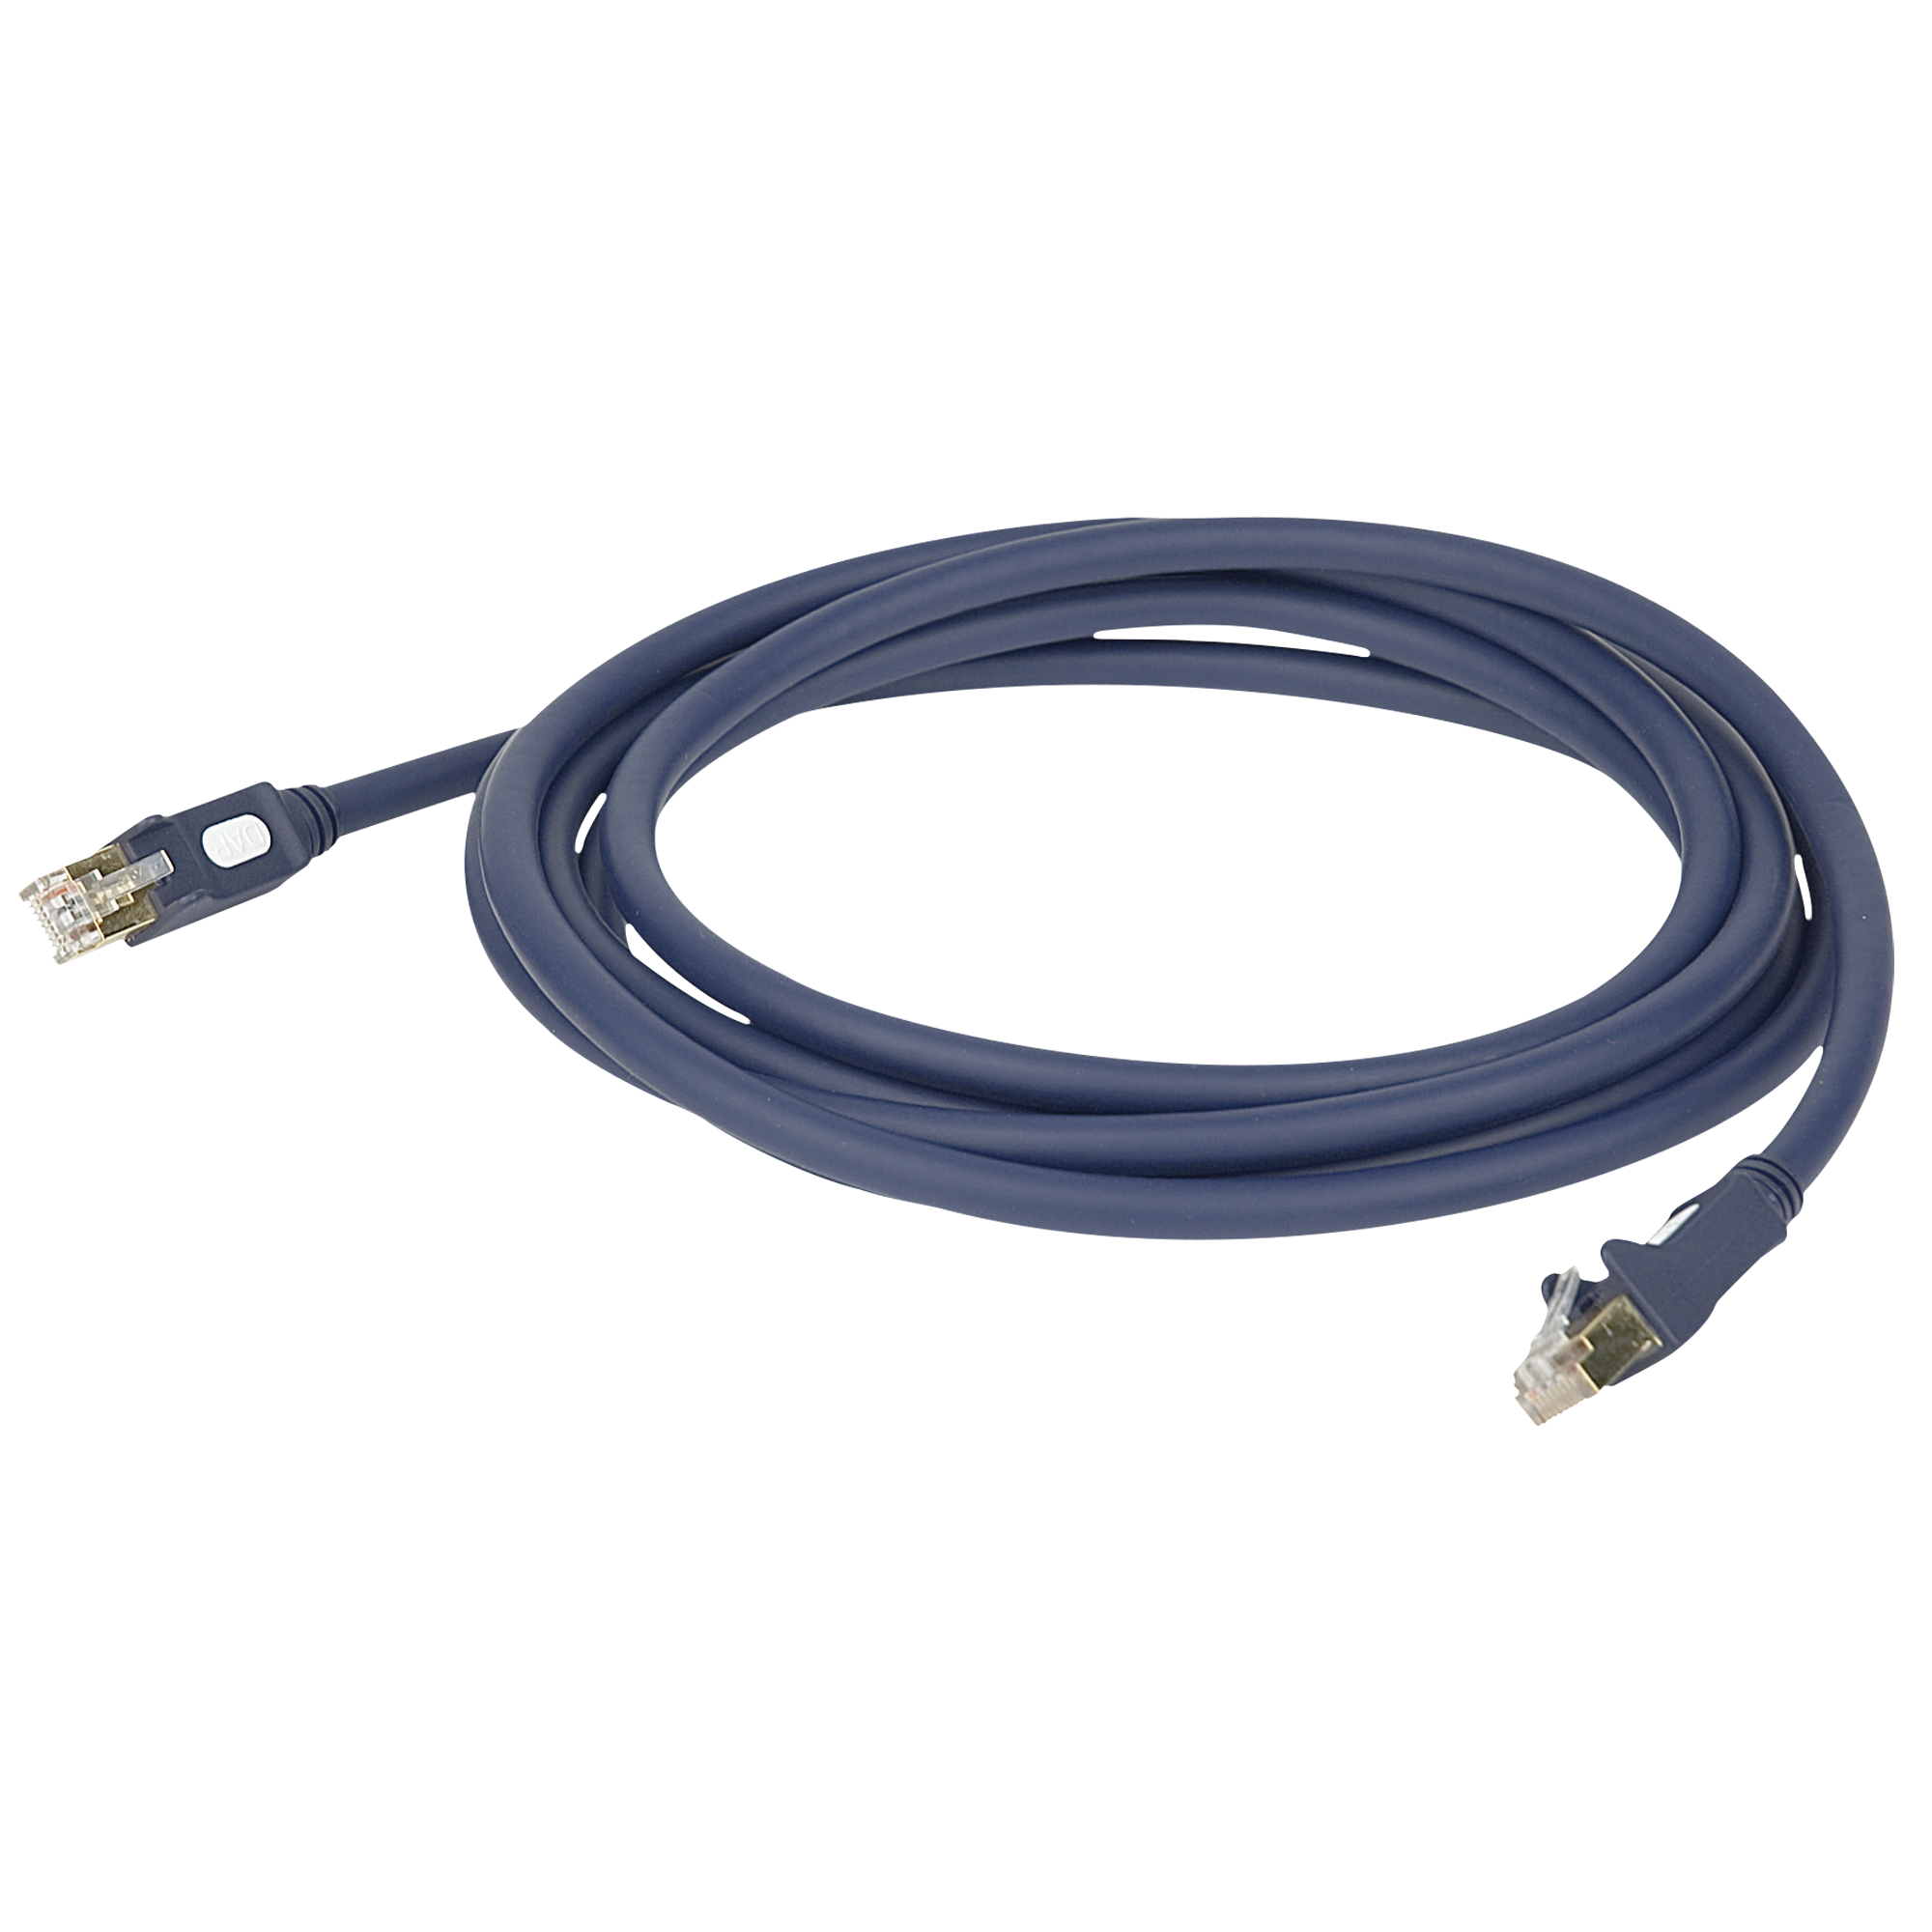 DAP FL56 - CAT6 Cable 3 m - Ethernet